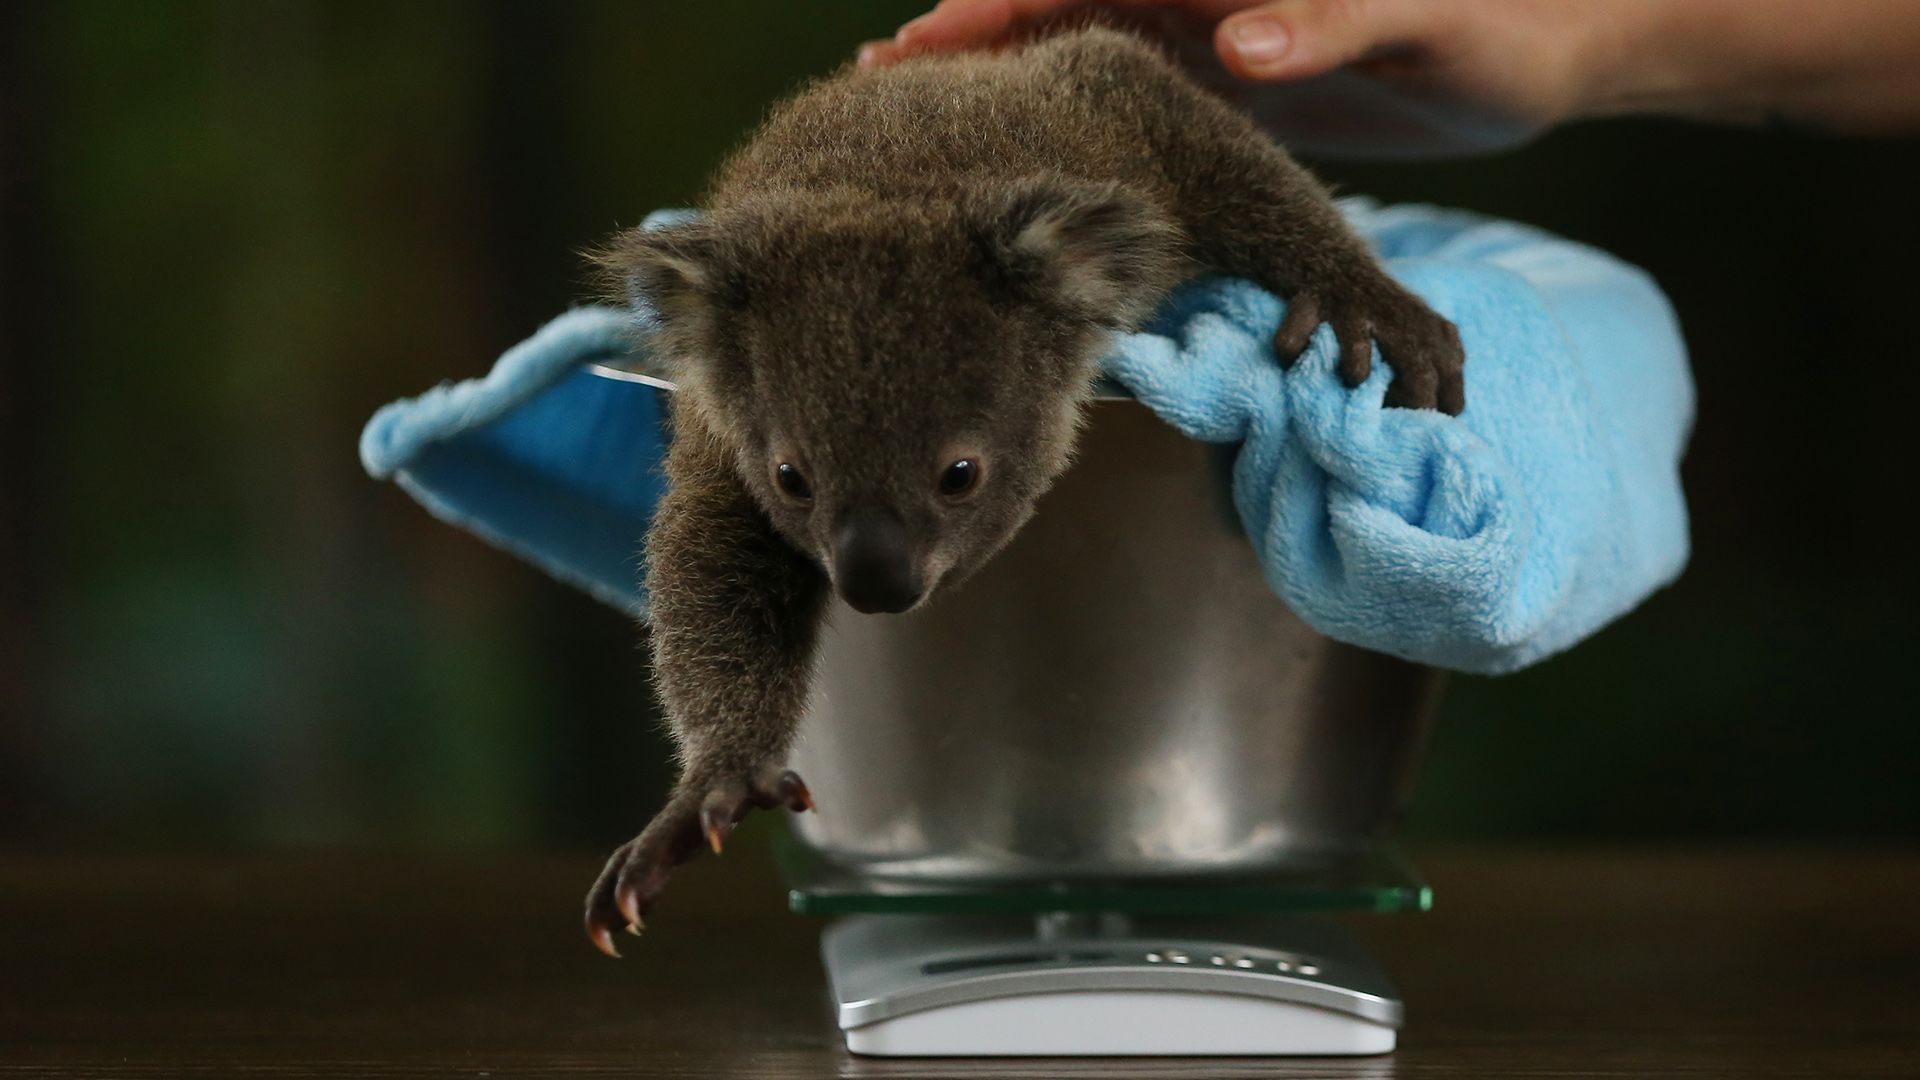 A koala ujjlenyomat majdnem pont olyan, mint az emberé